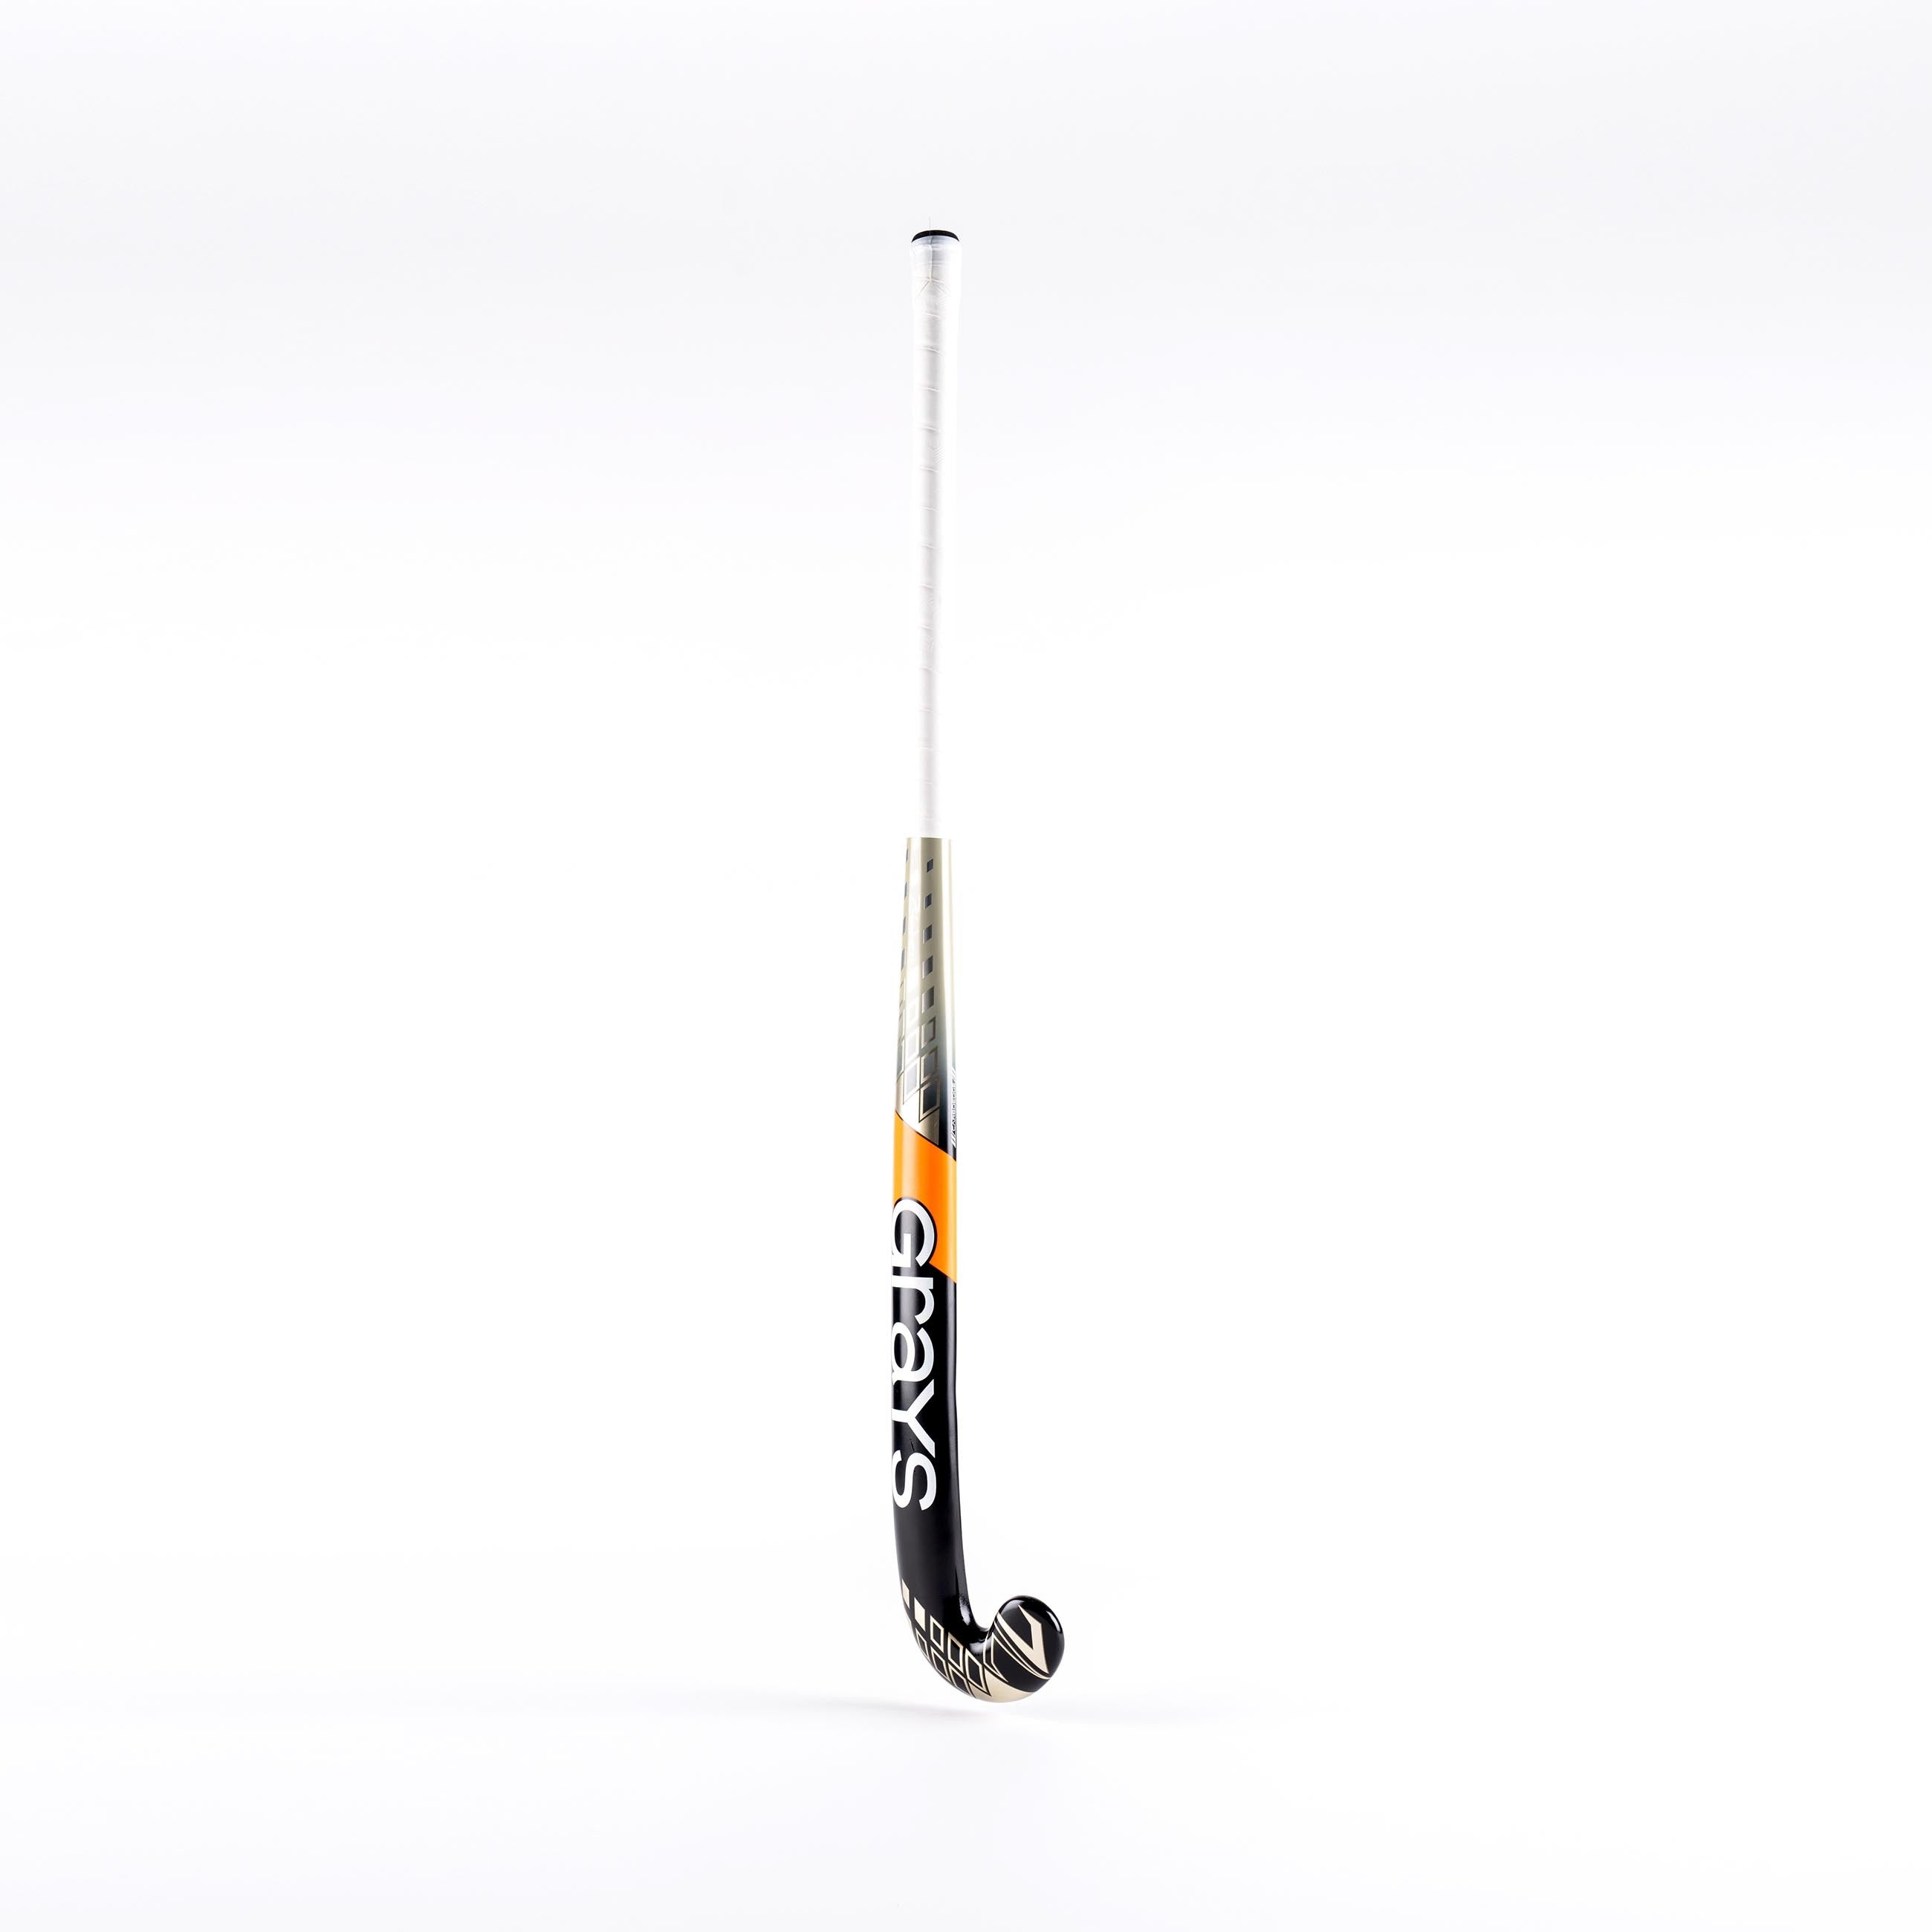 ZW7 Jumbow Composite Hockey Stick